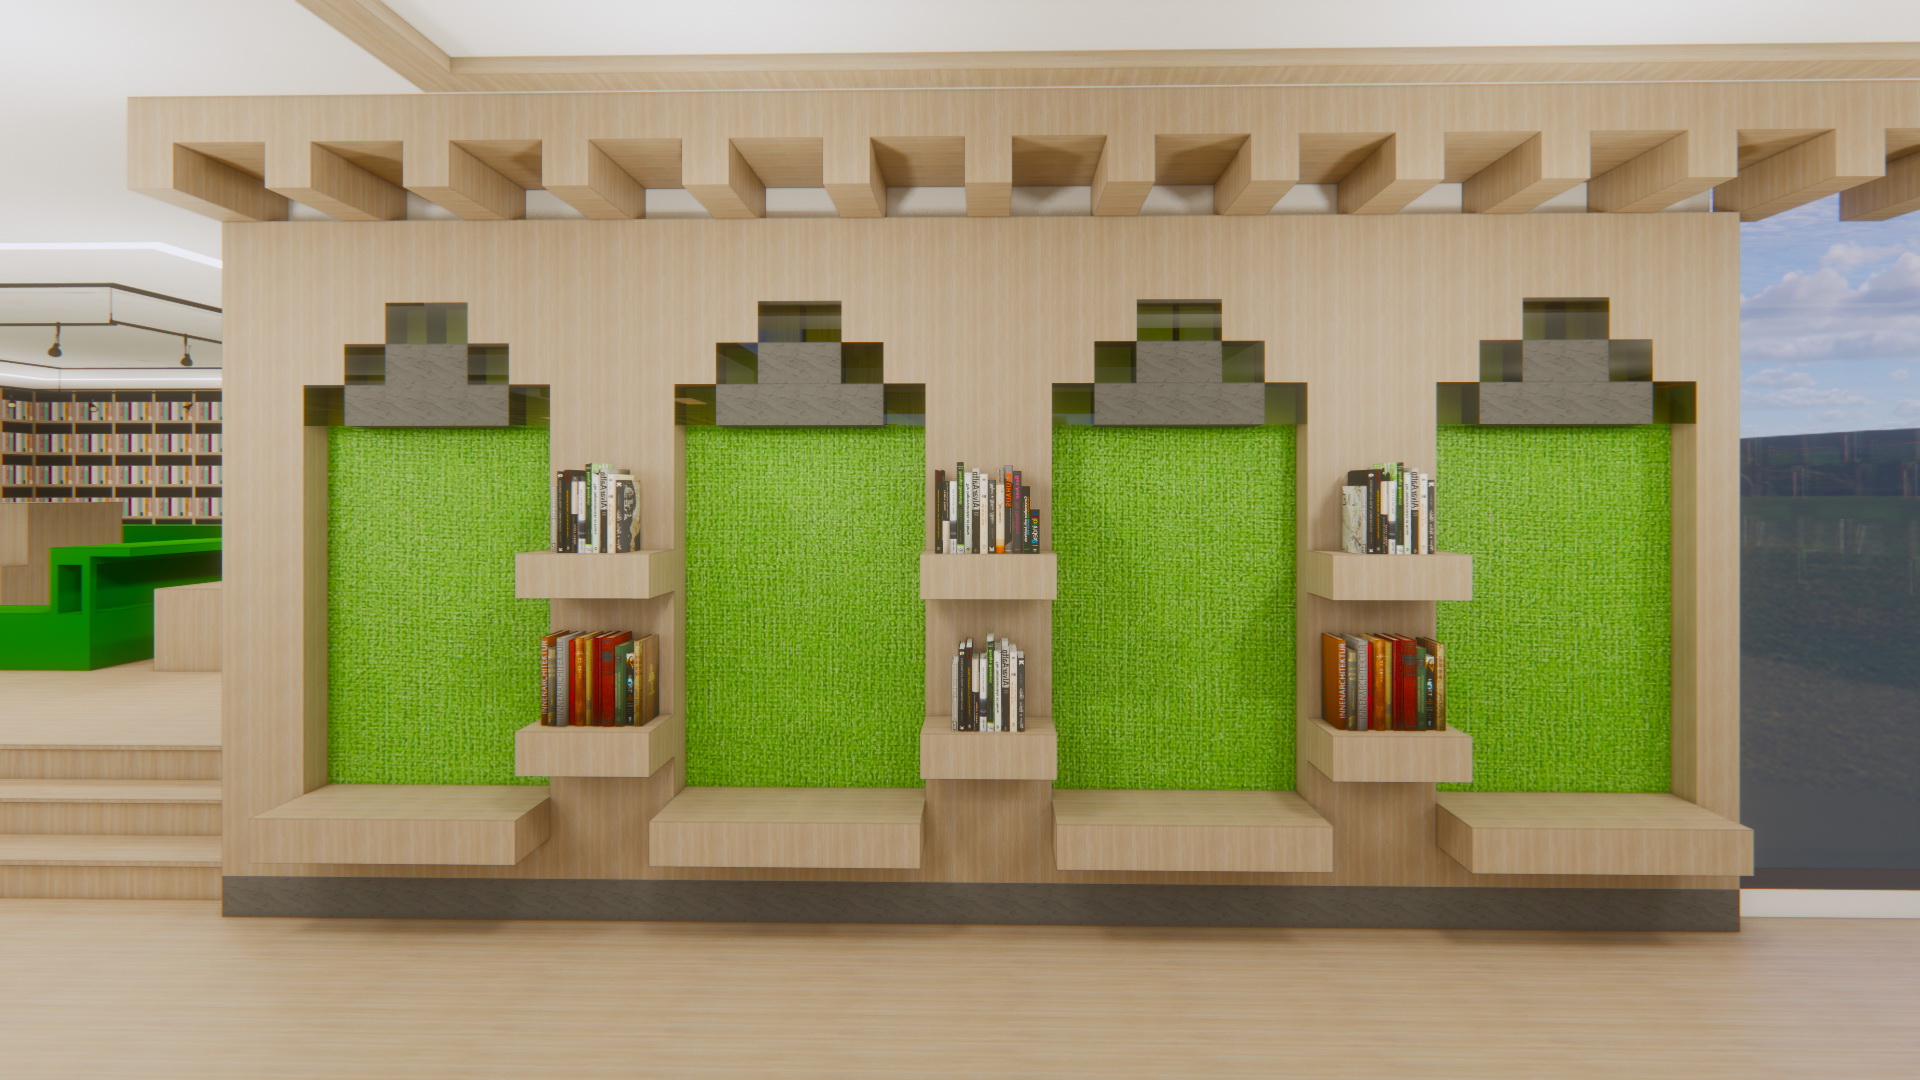 人居环境竞赛作品——传统新华书店的再生——“向上生长”的书店森林